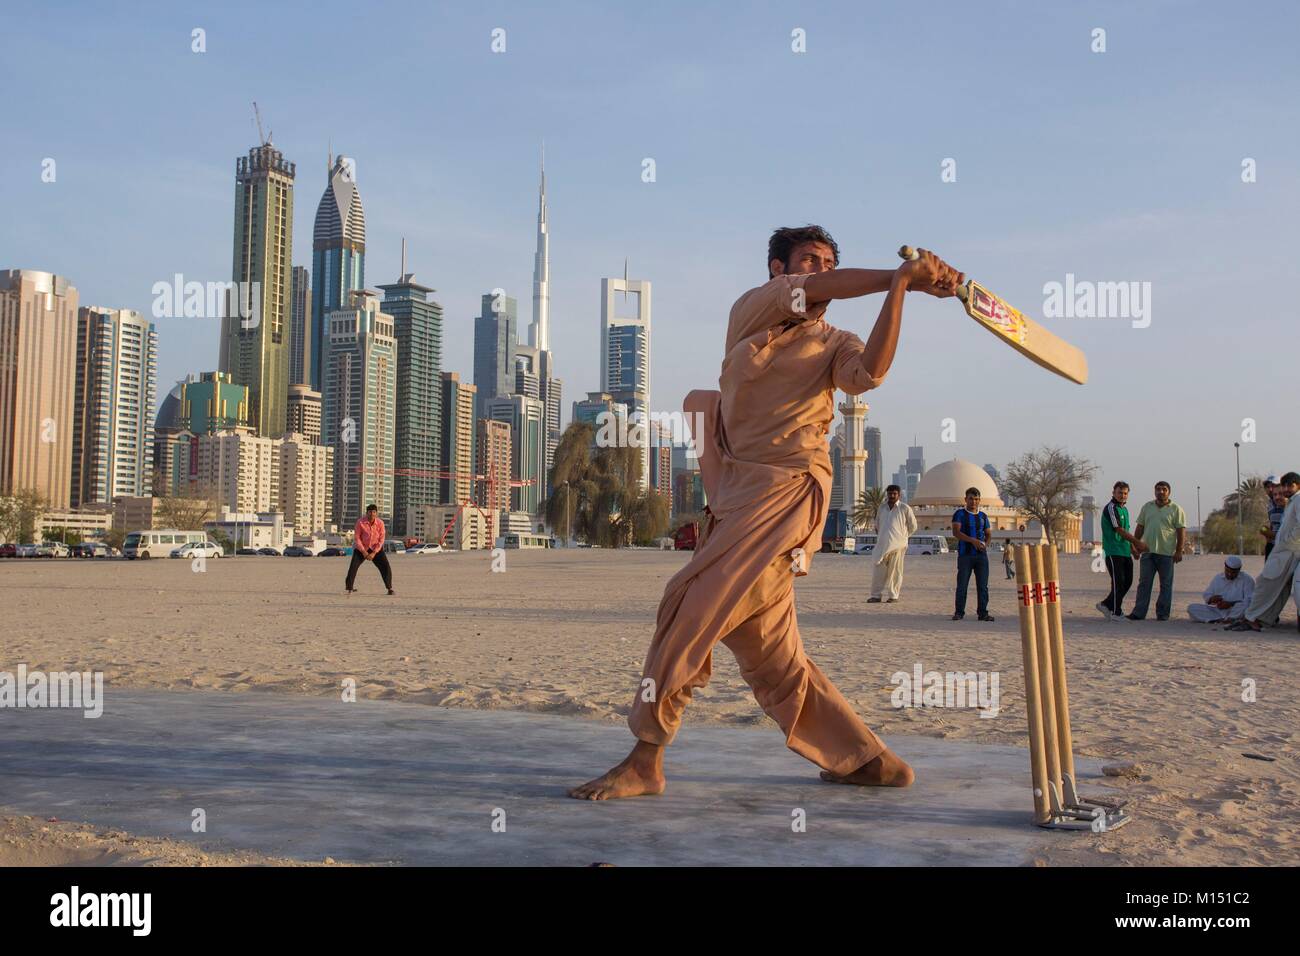 Emirats arabes unis, dubaï, pakistanais de cricket des joueurs près de Sheikh Zayed Road Banque D'Images